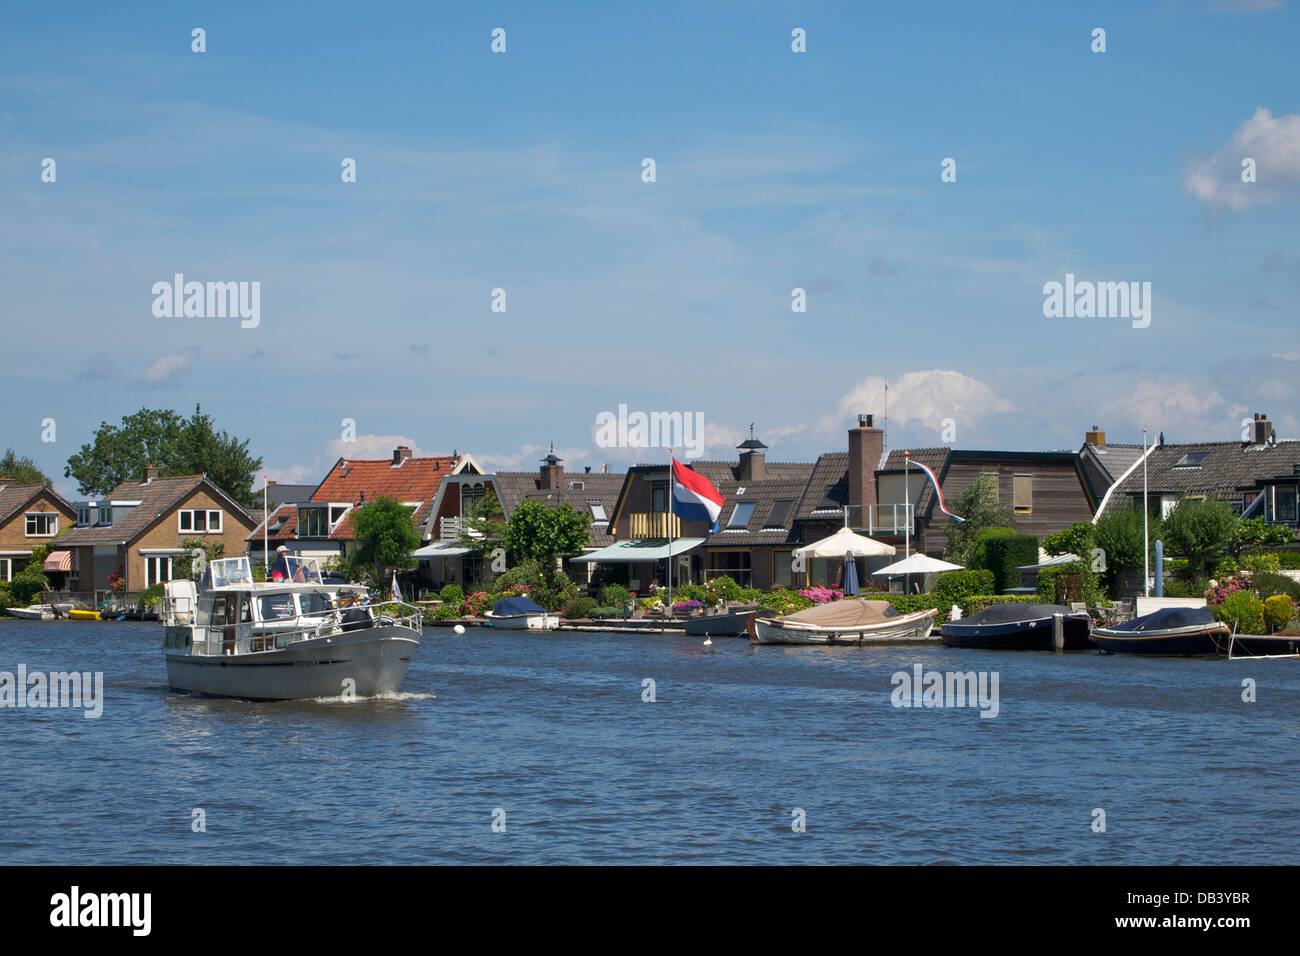 Scène de rivière à Loenen aan de Vecht, Utrecht, Pays-Bas, avec location de la voile sur la rivière Vecht Banque D'Images